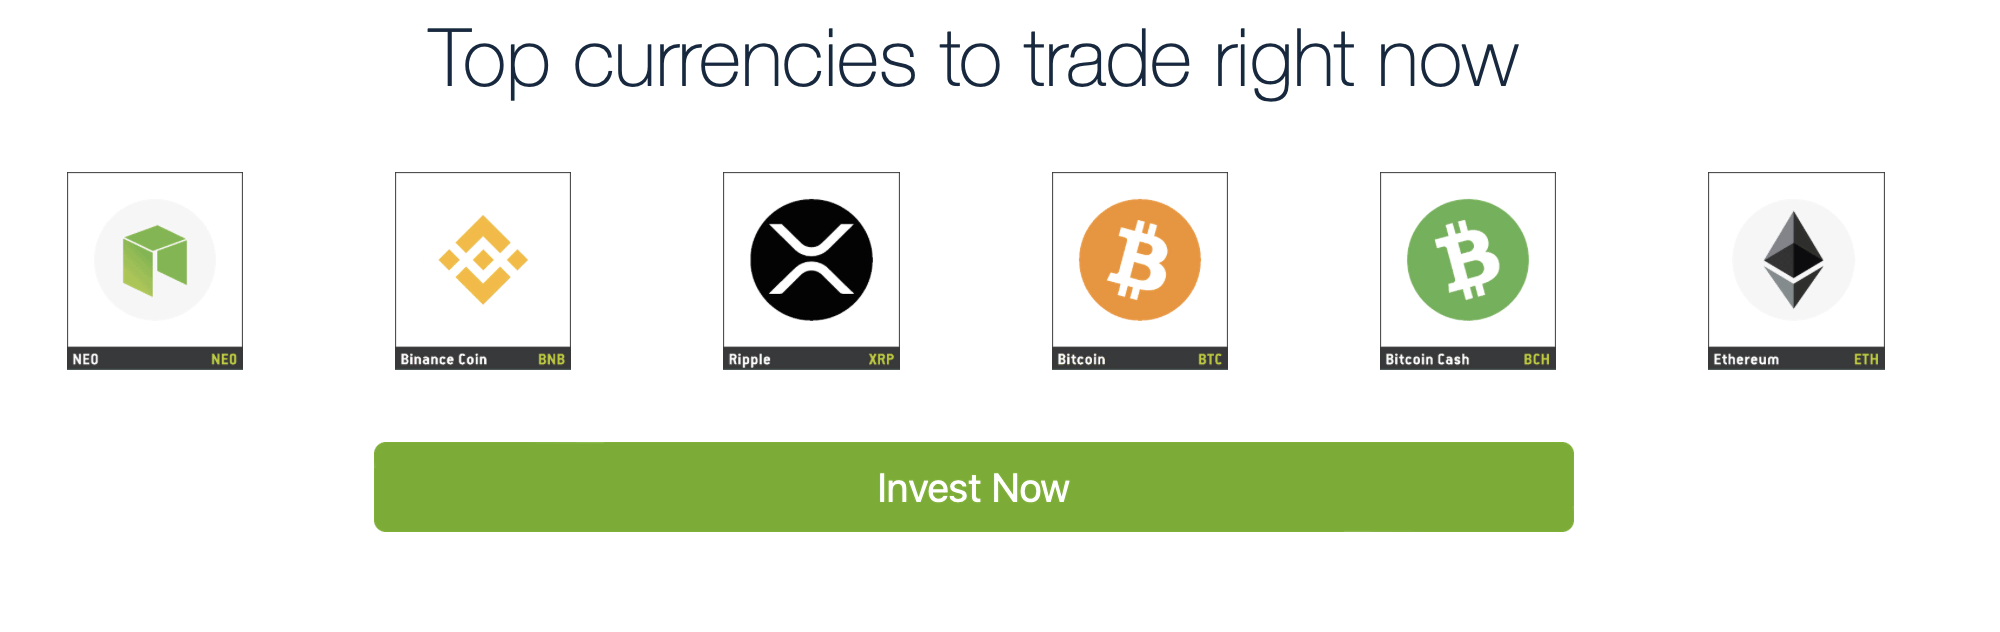 Tiền điện tử có thể giao dịch trên Bitcoin Pro